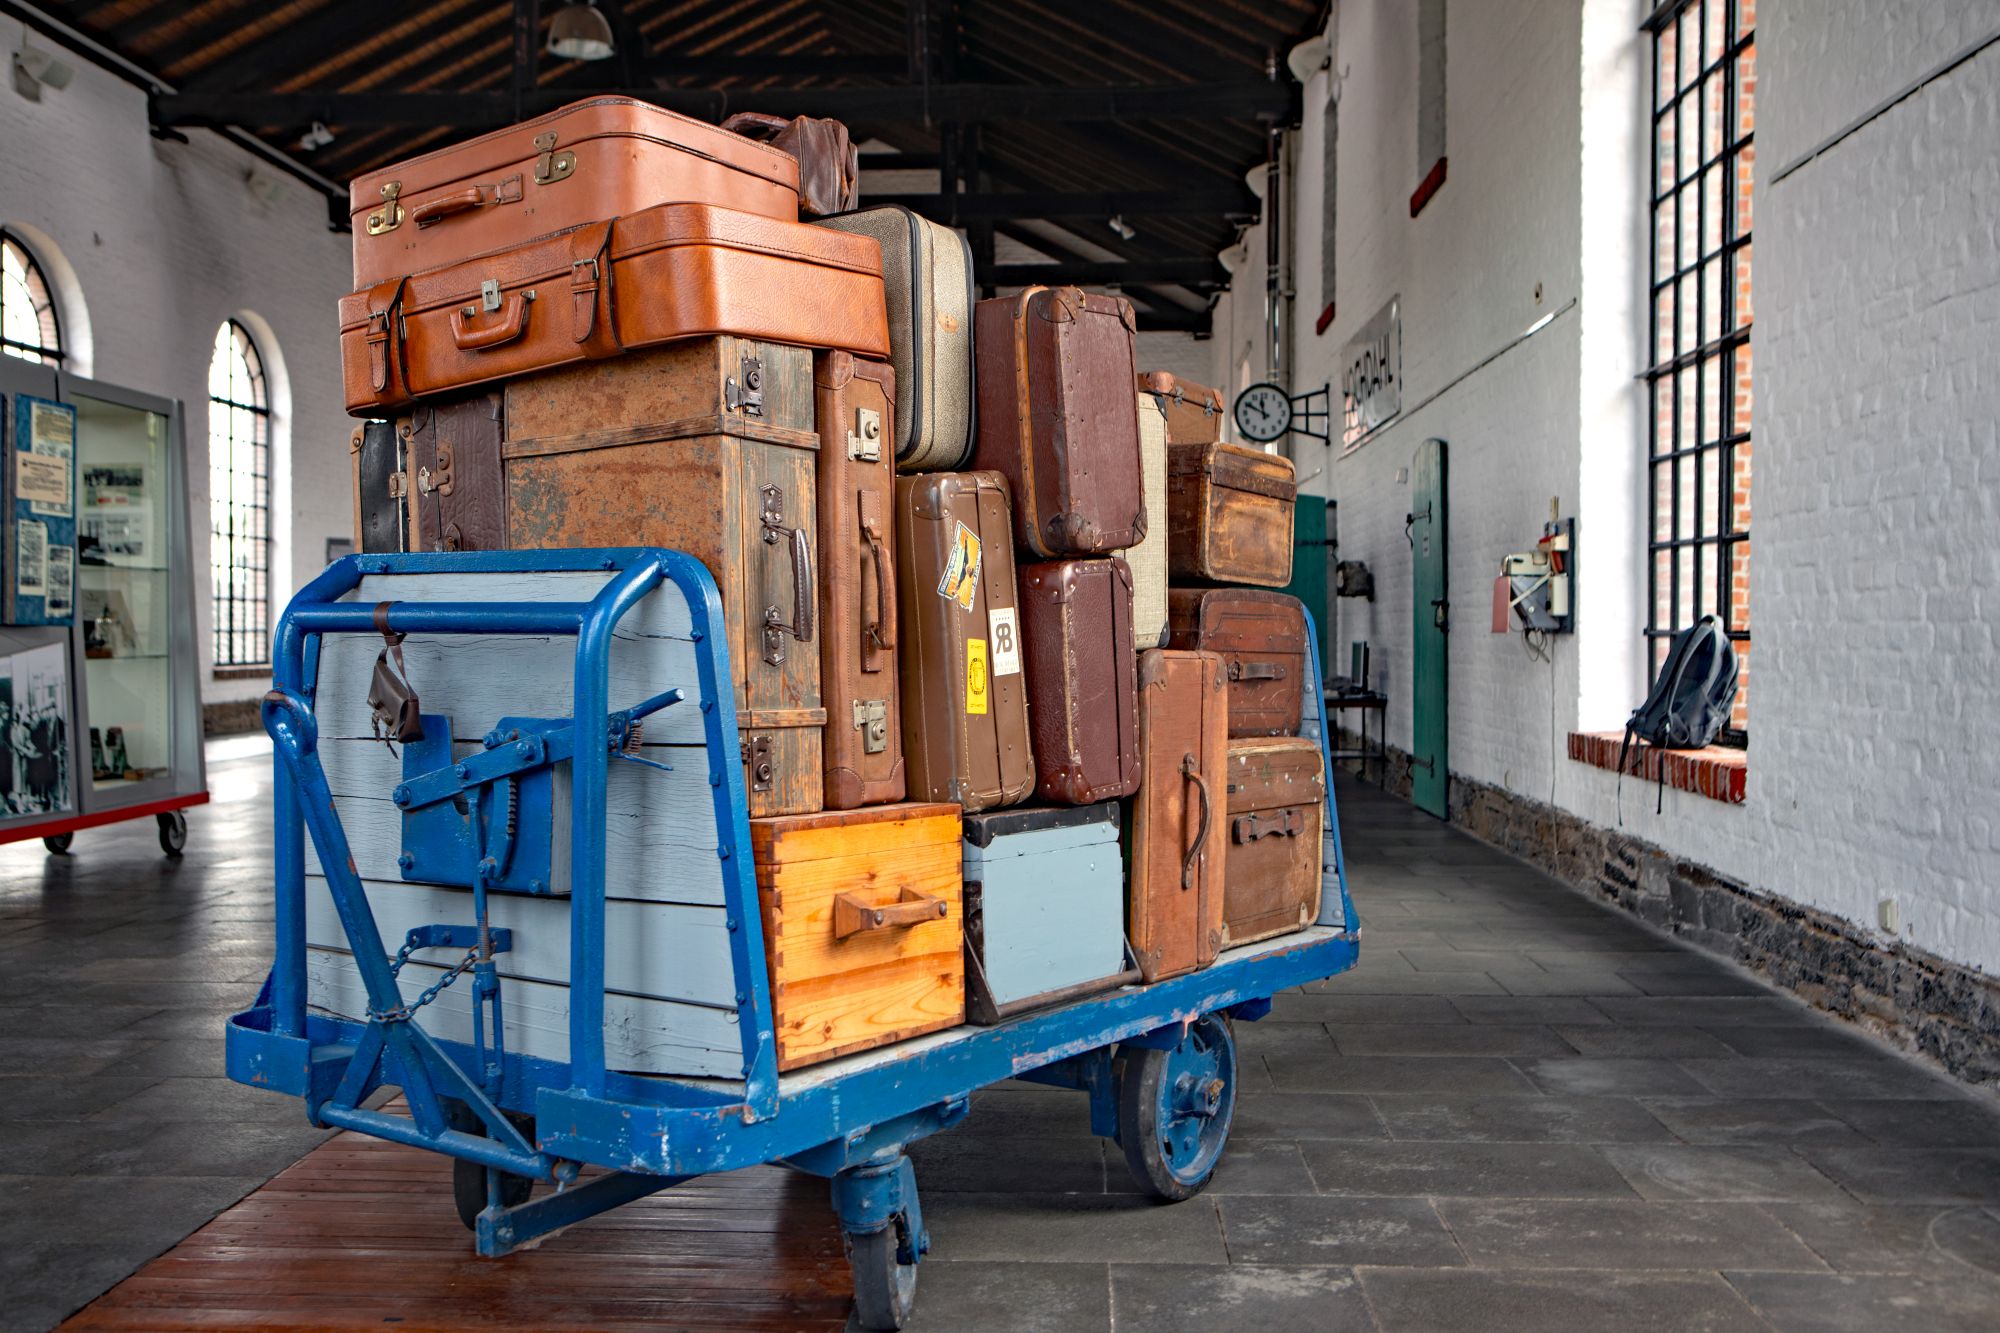 Kofferwagen, gepackt mit vielen verschiedenen Koffern